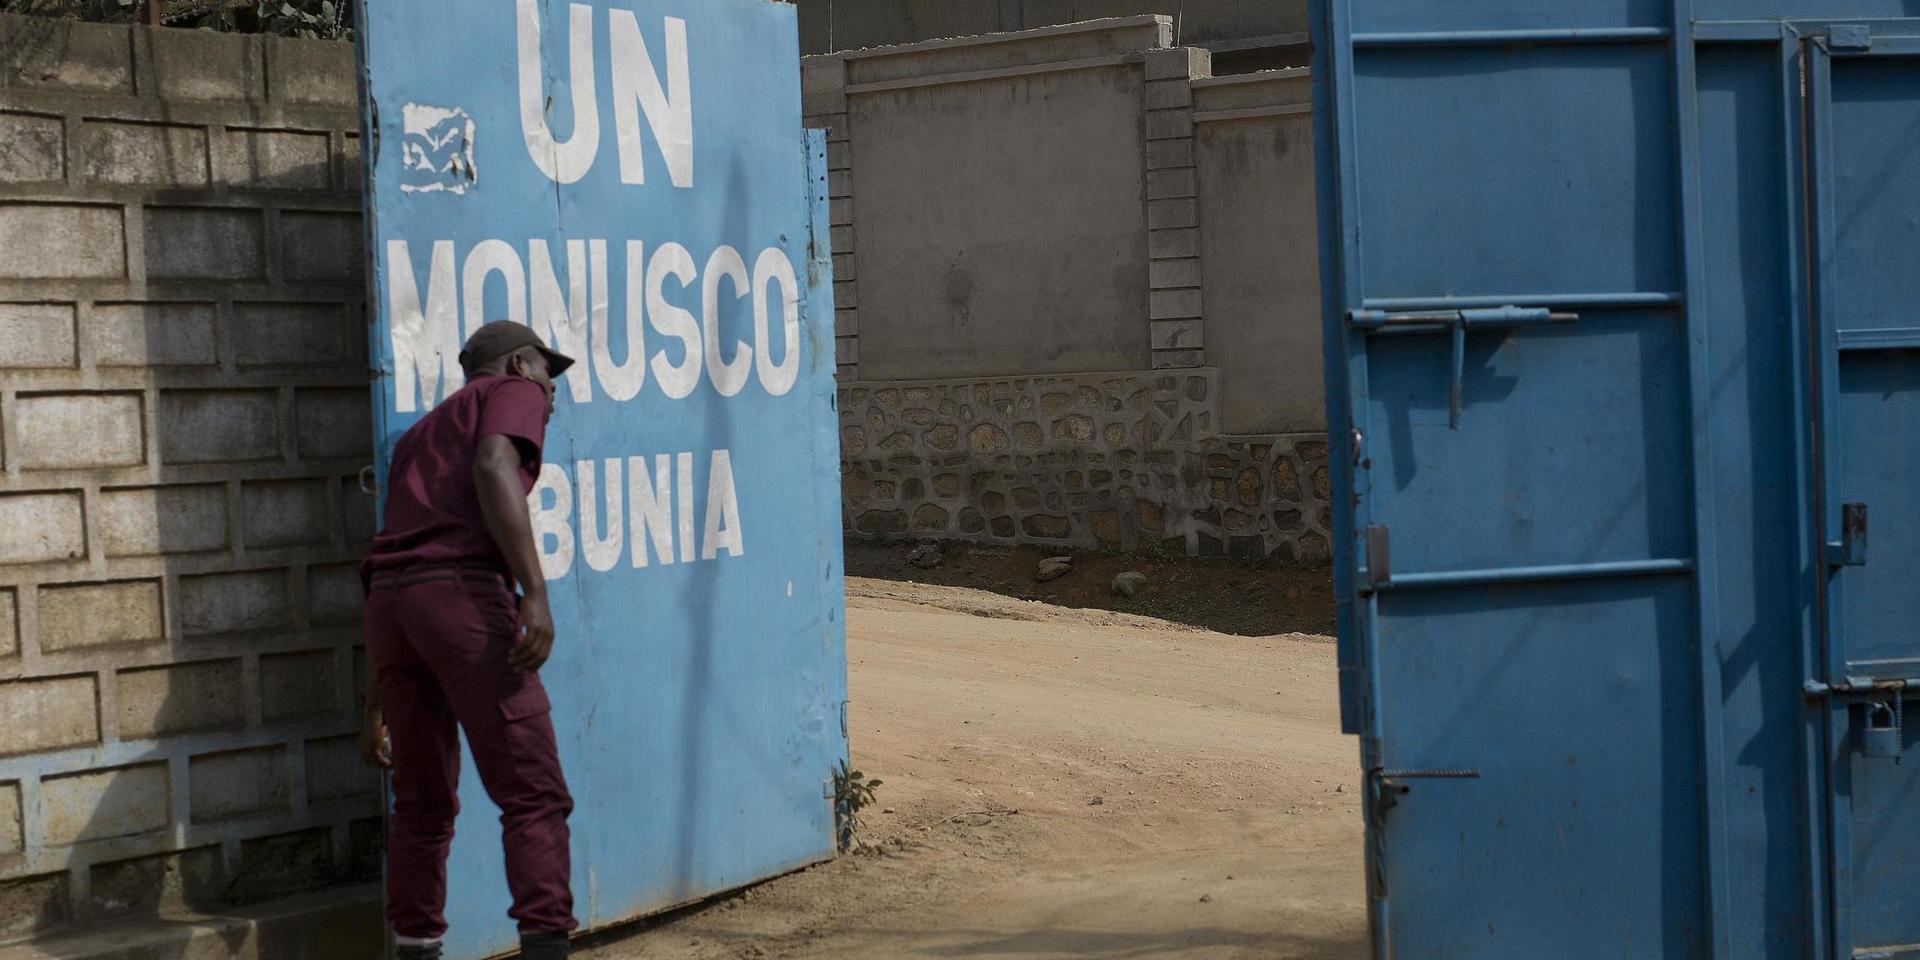 FN försöker upprätthålla lugn i östra Kongo-Kinshasa, men kan inte hålla koll överallt. Arkivbild från Bunia i Ituri, där även svensk FN-personal varit stationerad.